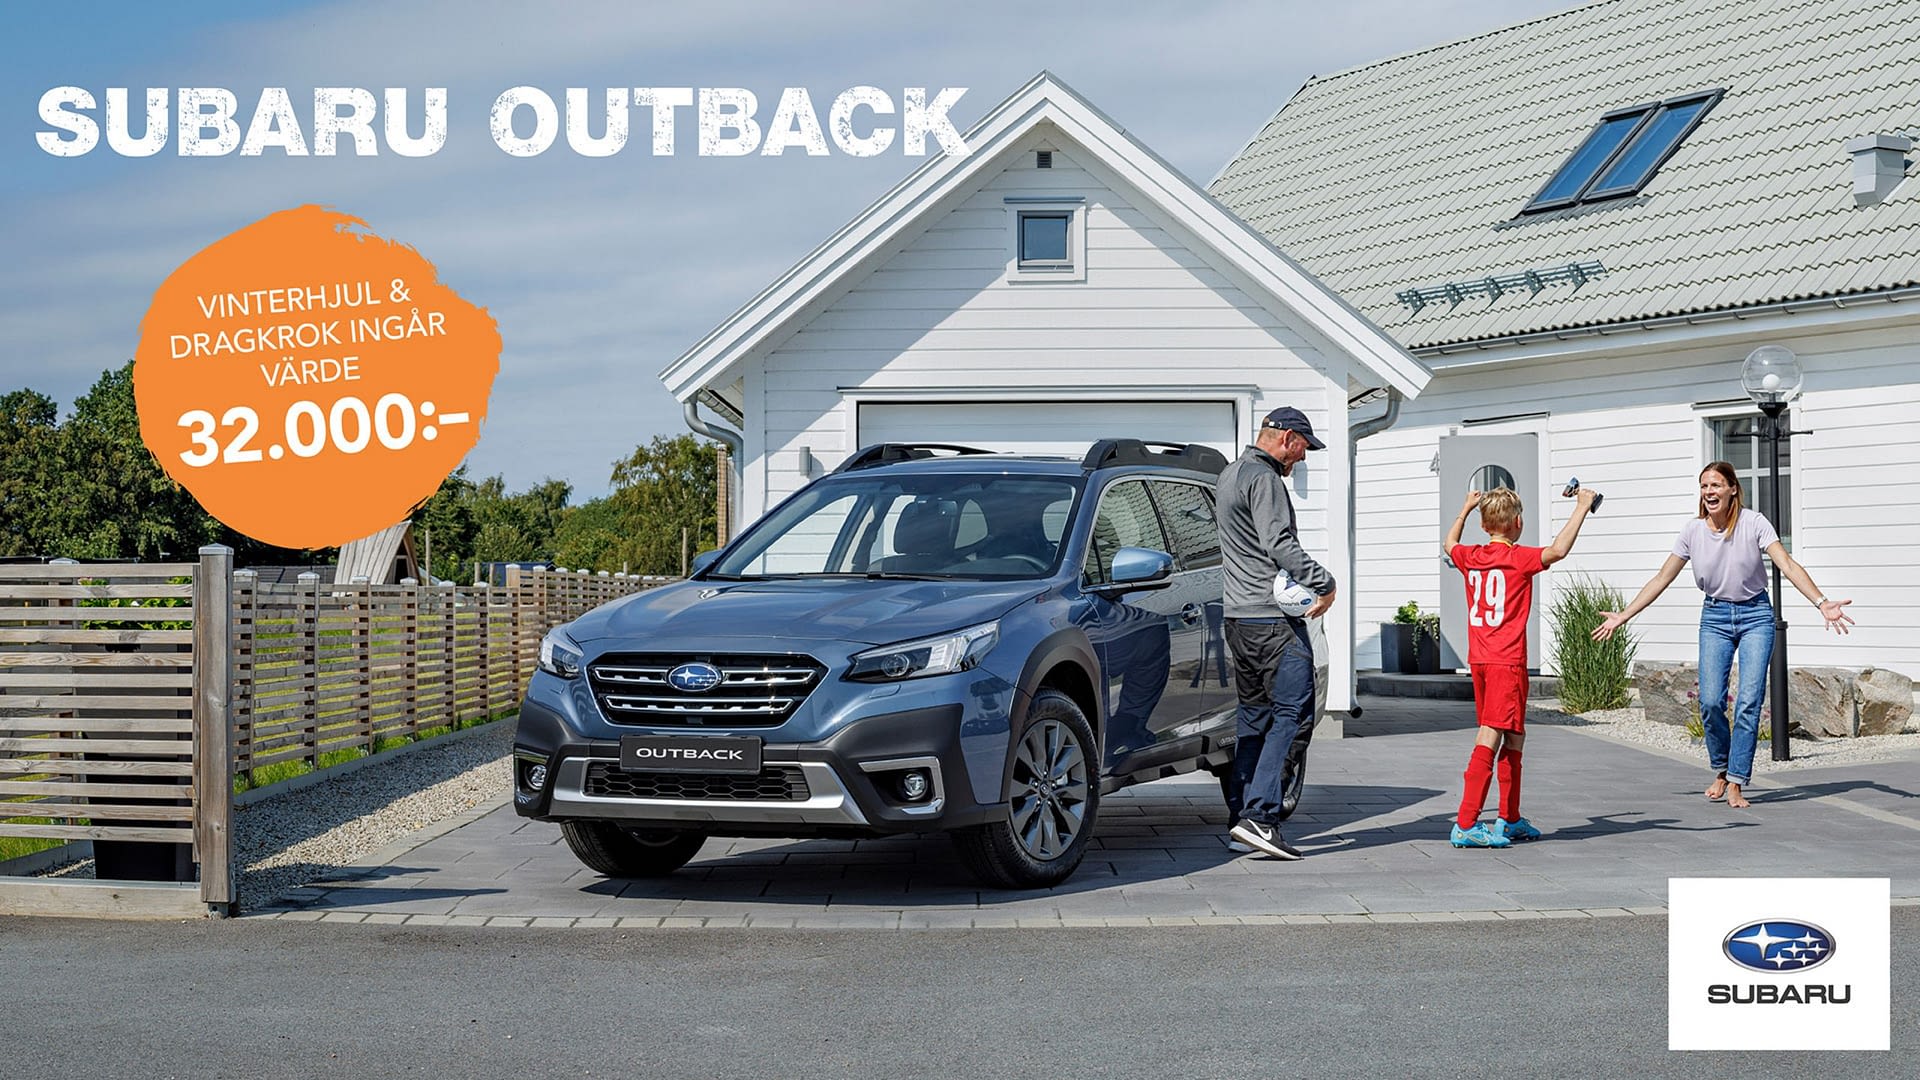 Subaru Outback - Vinterhjul och Dragkrok - Landrins Bil – 1